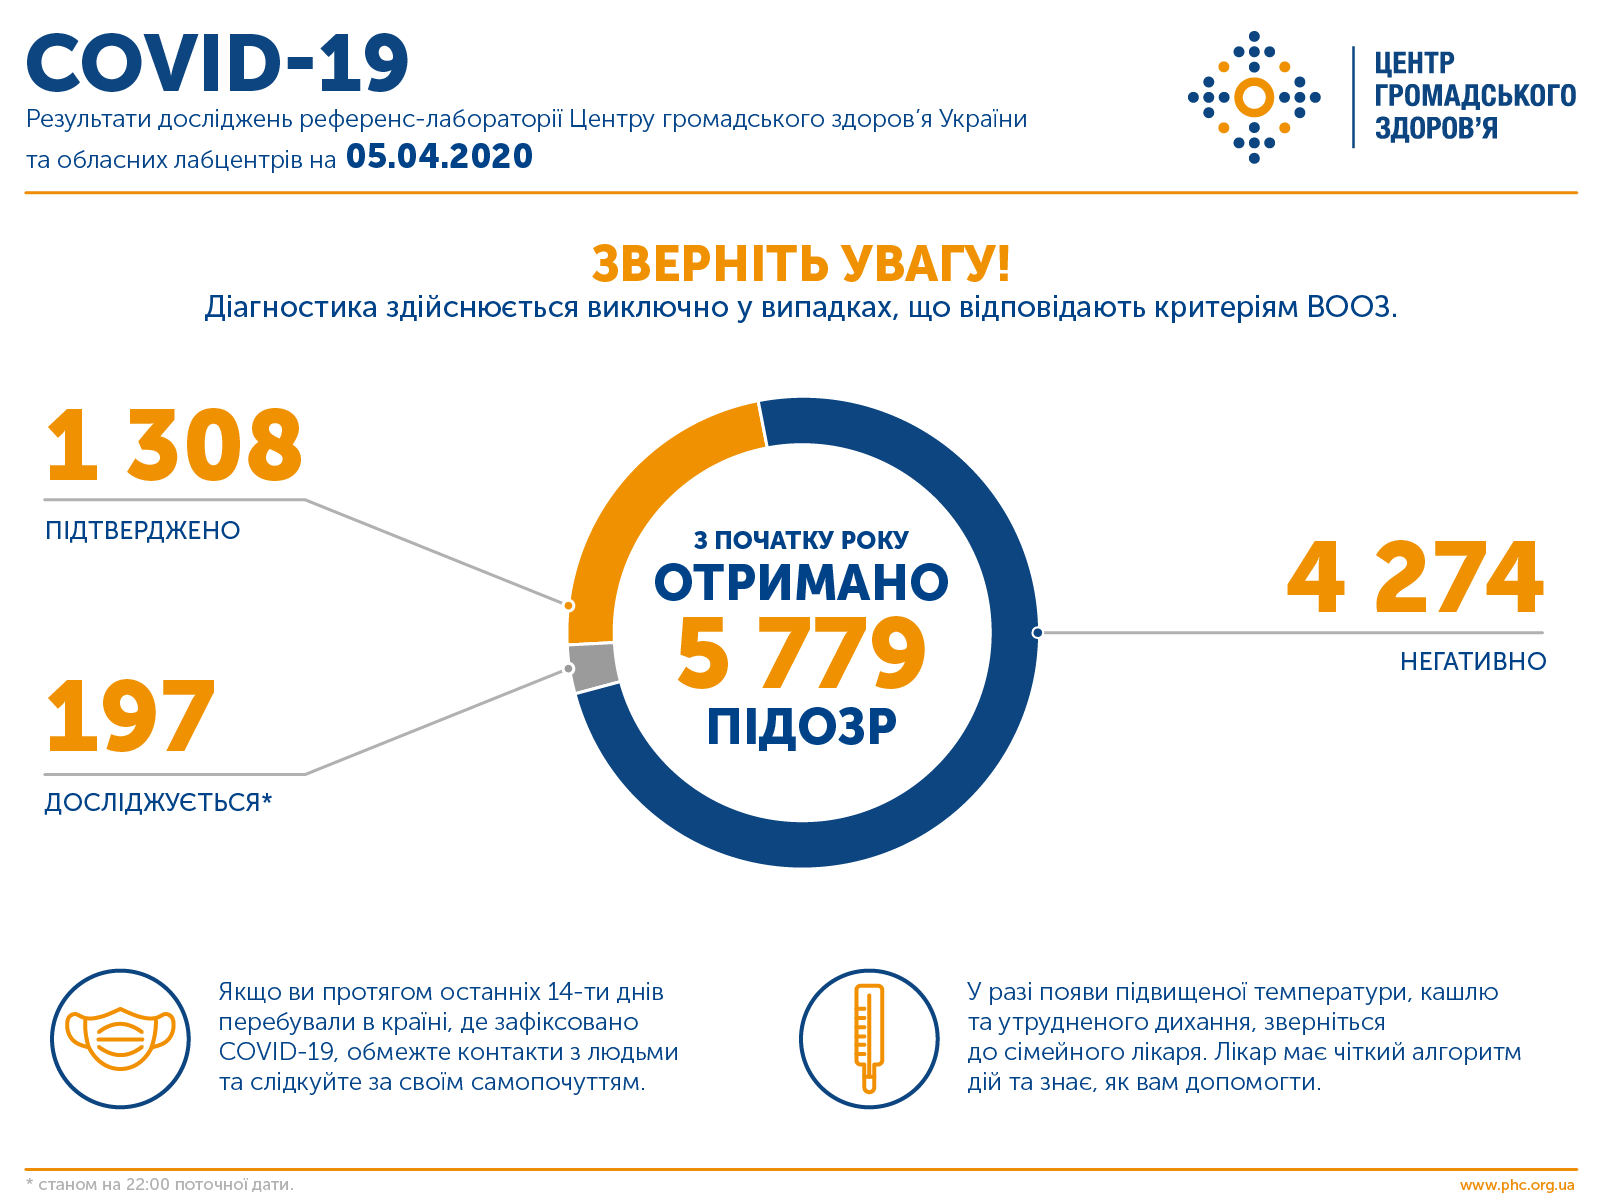 В Украине - 1308 случаев заболевания COVID-19, 37 - летальные